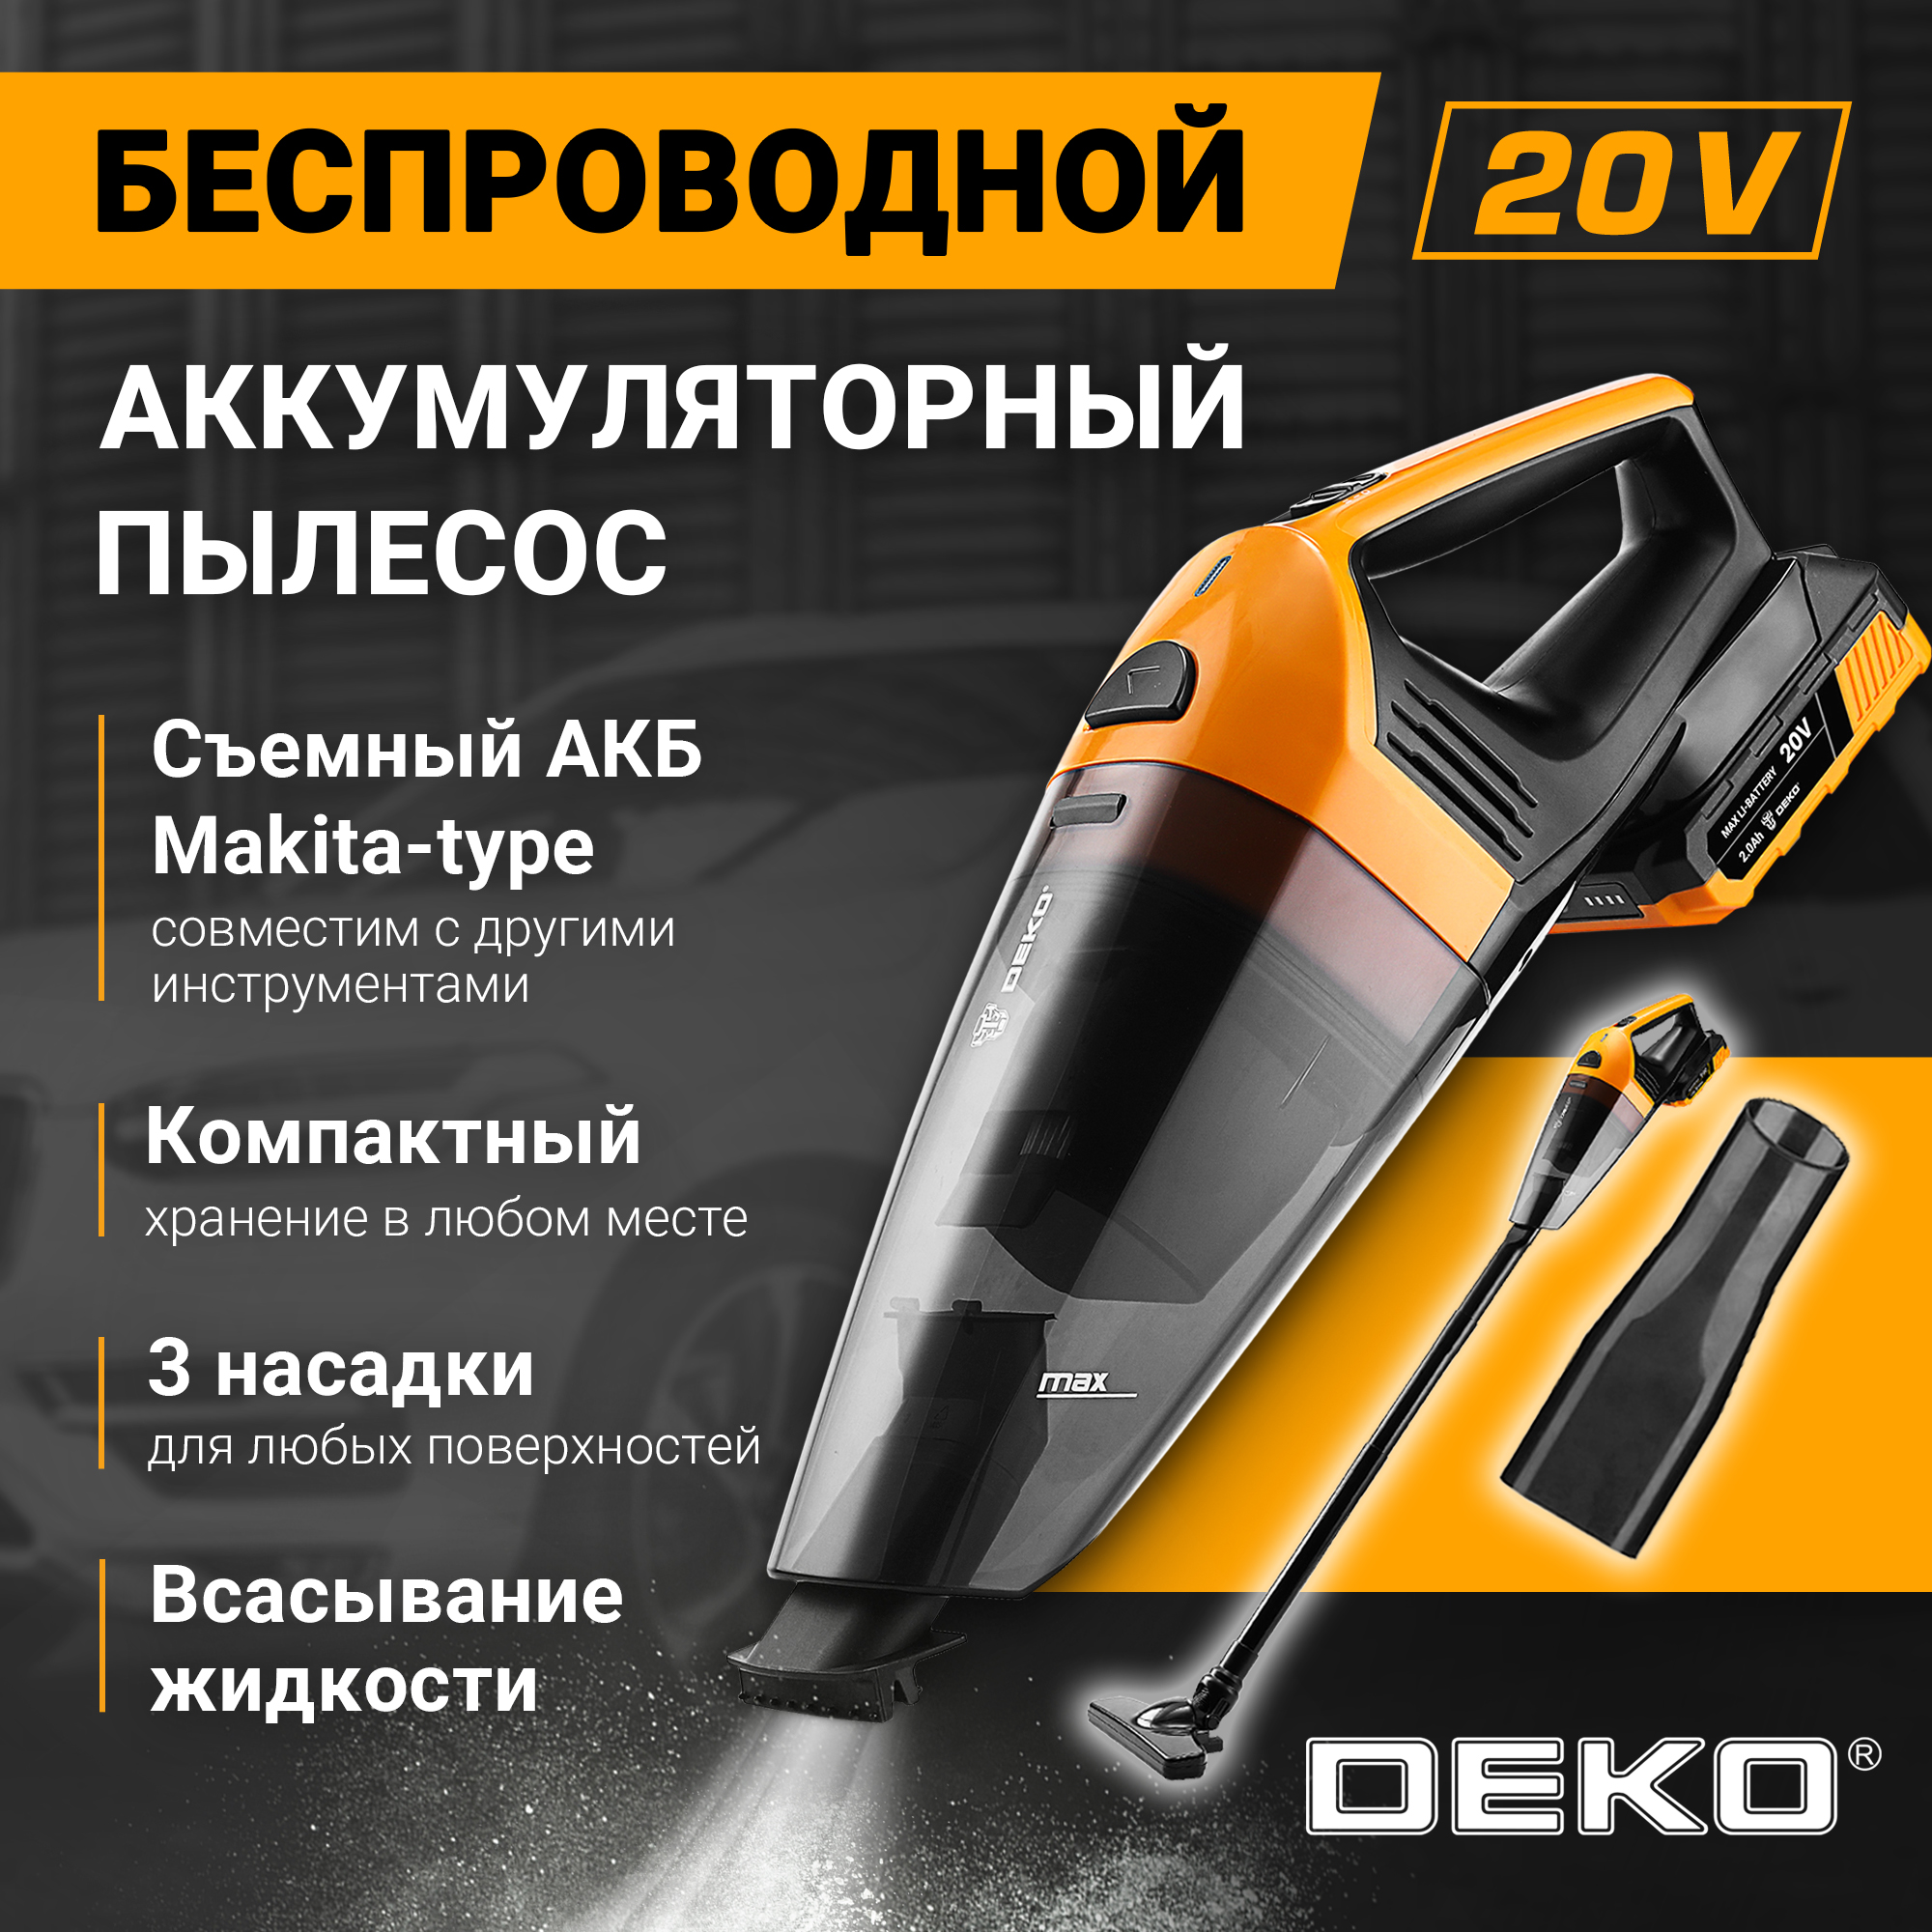 Пылесос DEKO DKVC20V черный пылесос промышленный deko dkvc 1300 12p 015 0035 желто